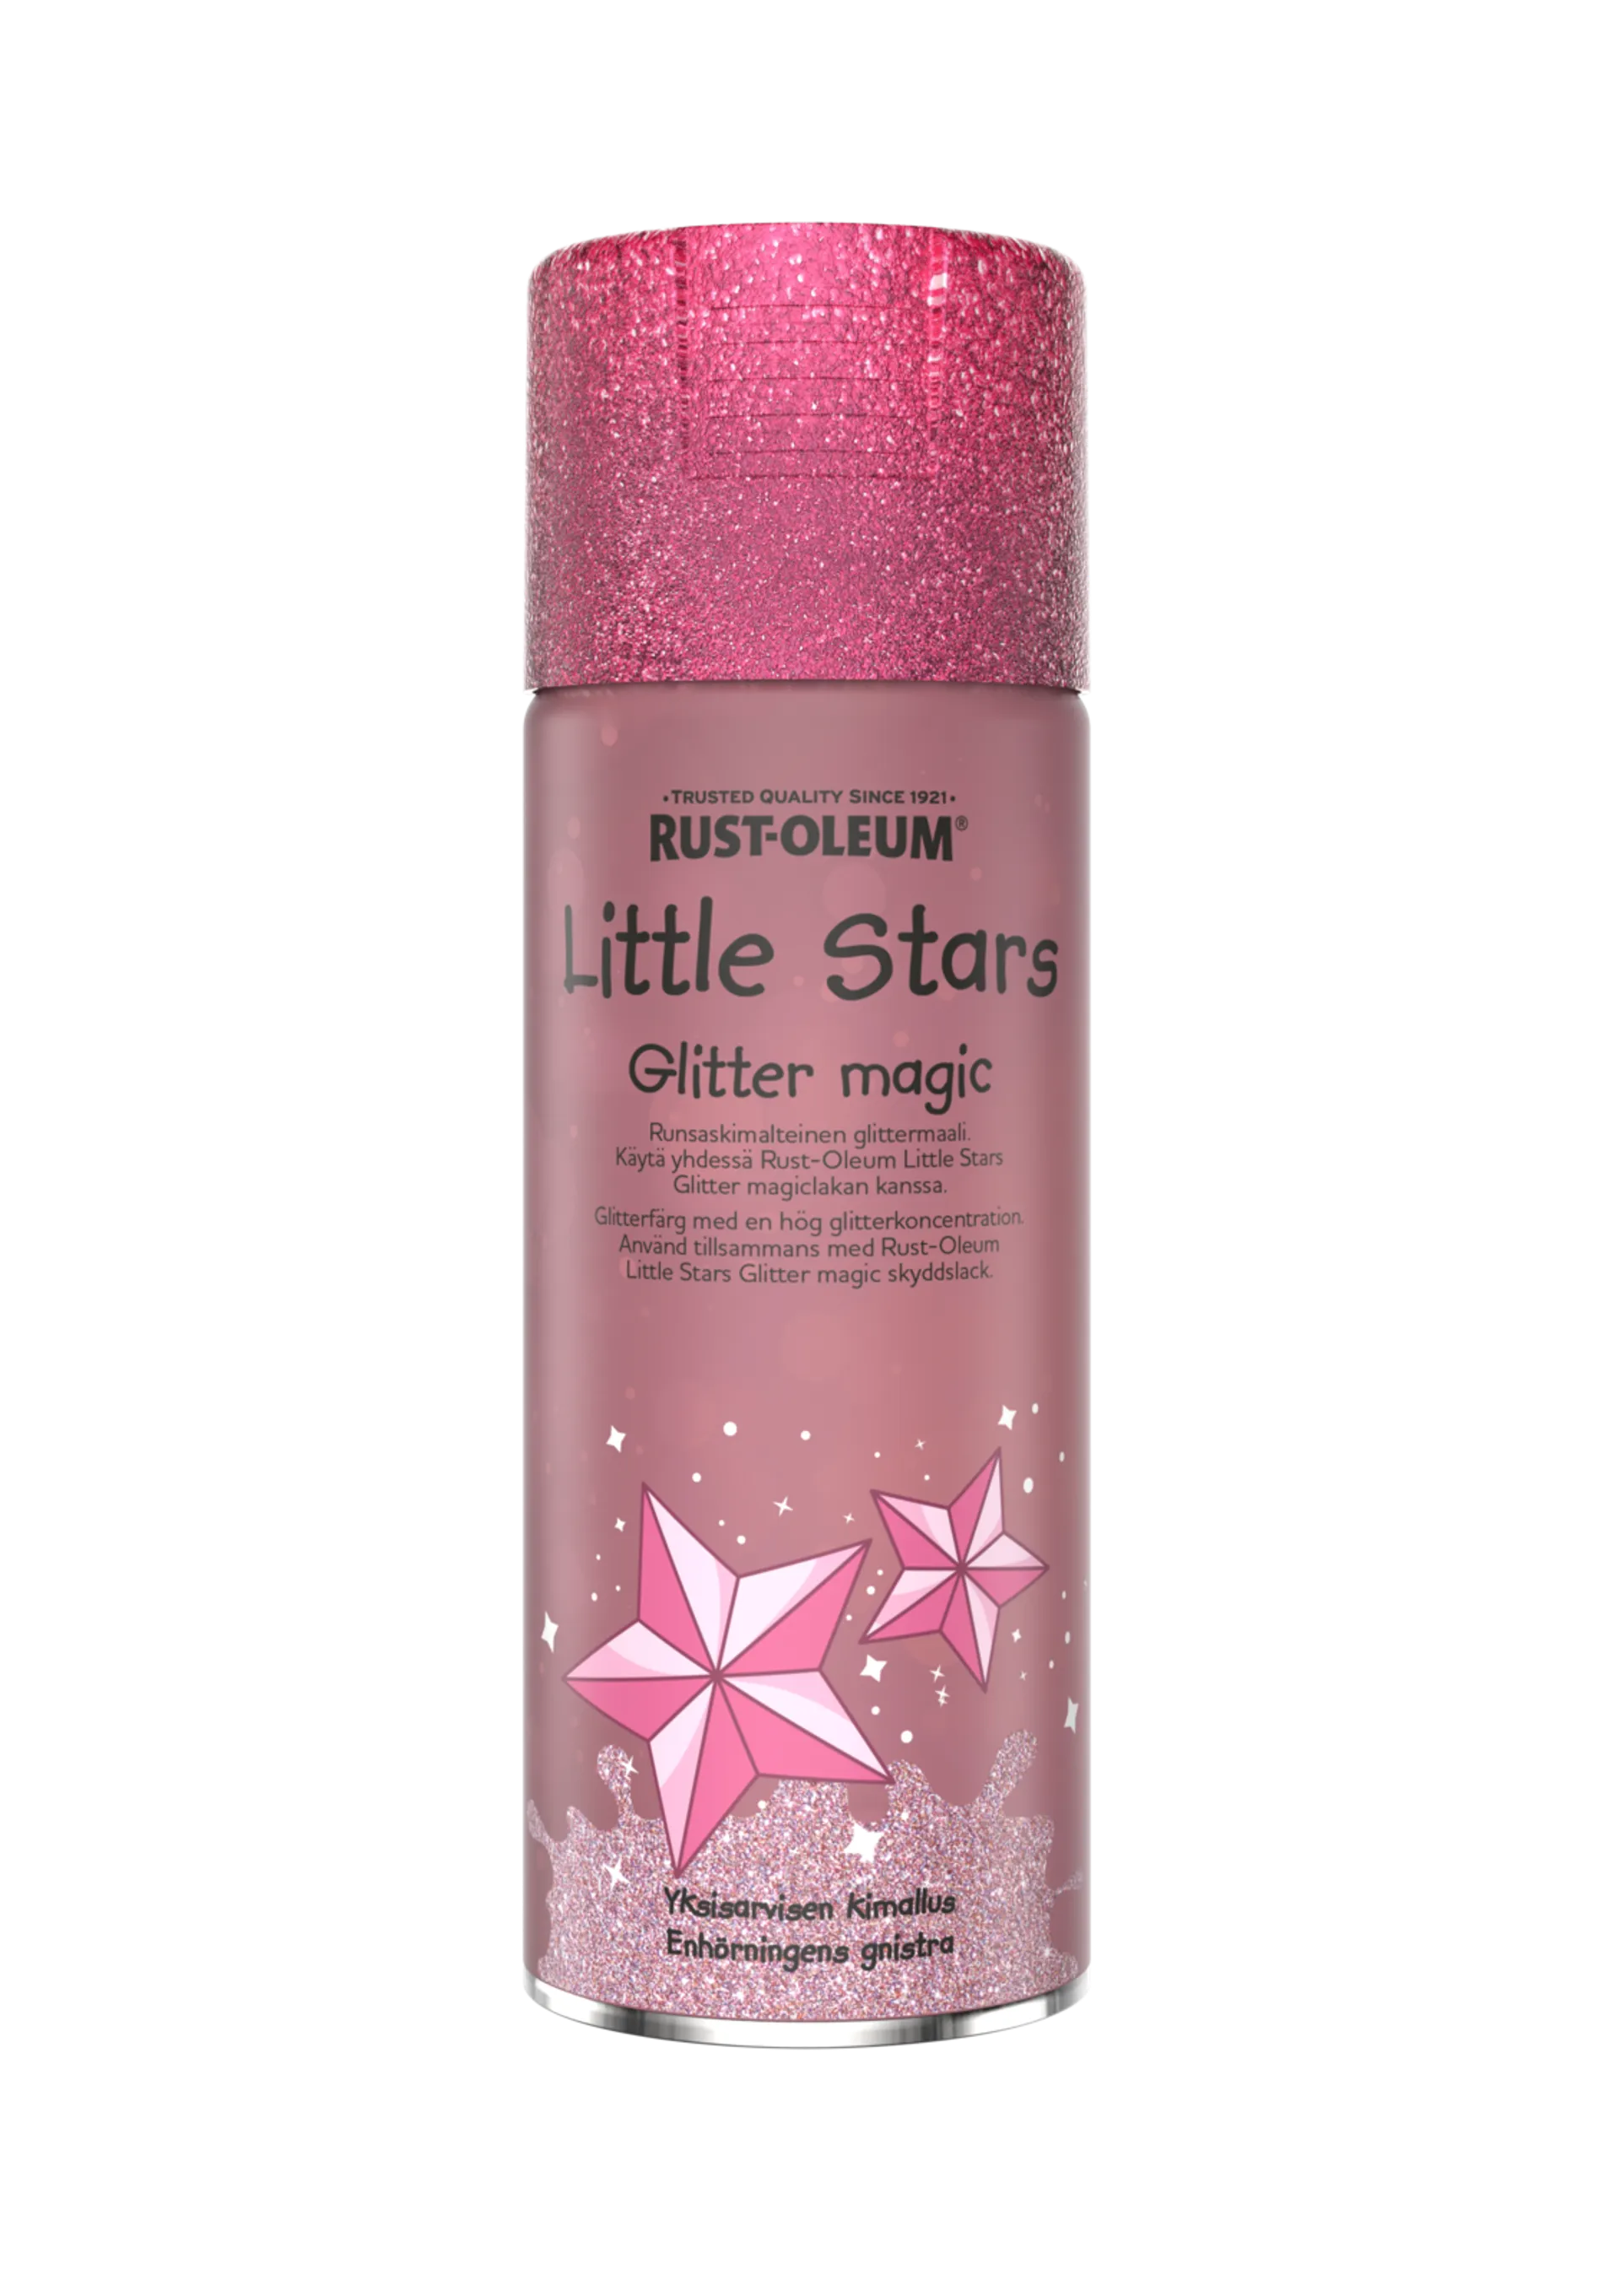 Rust-Oleum Little Stars Glitter Magic spraymaali 400ml Yksisarvisen säihke